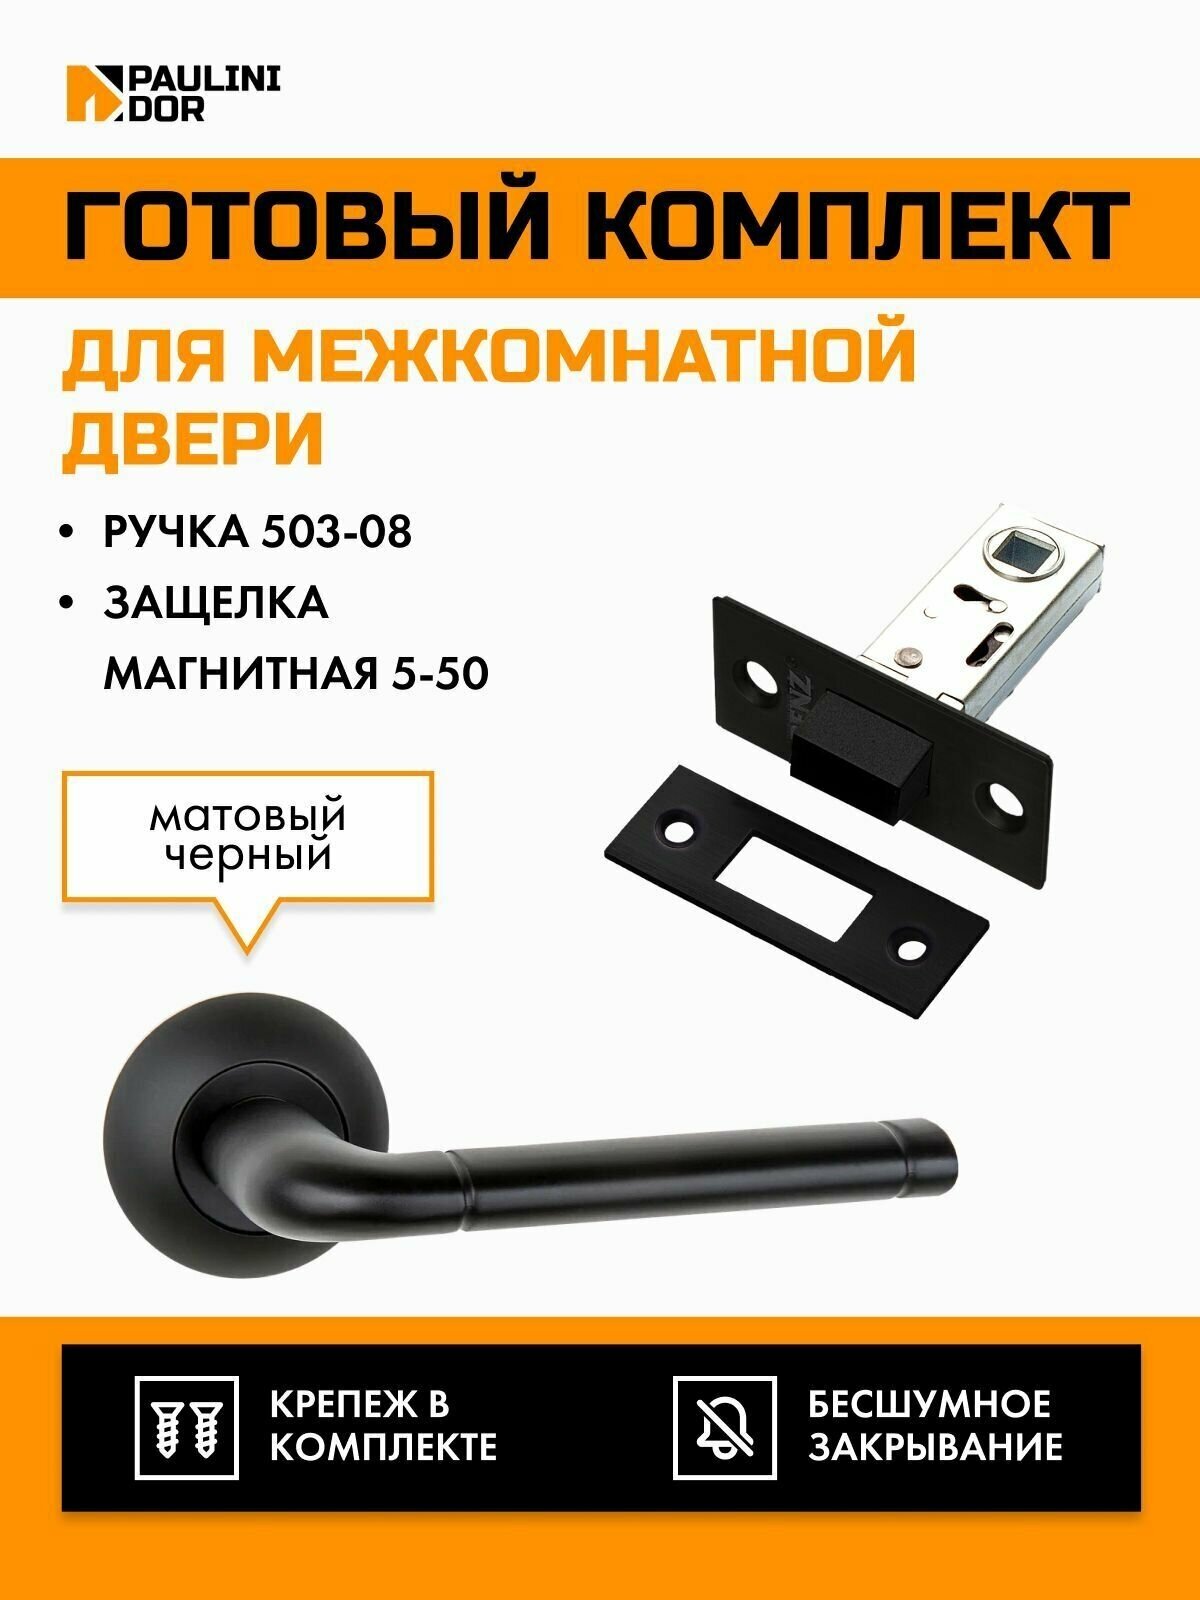 Комплект для межкомнатной двери PAULINIDOR ручки 503-08 + защелка магнитная 5-50, Черный